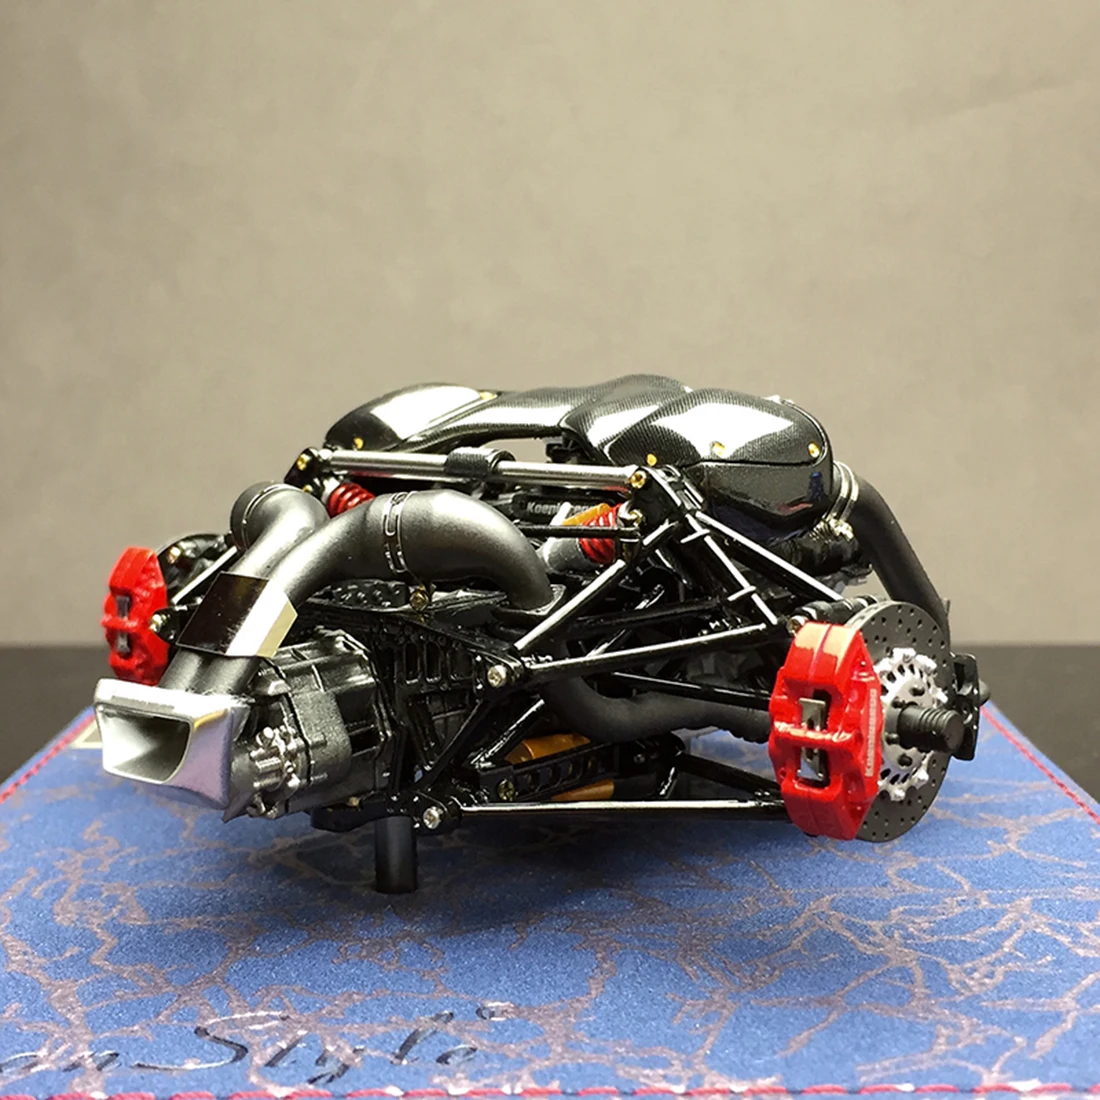 NFSTRIKE Frontiart FA 1:18 Agera RS Модель двигателя Смола двигатель Новое поступление-Коллекционное издание(готовая версия